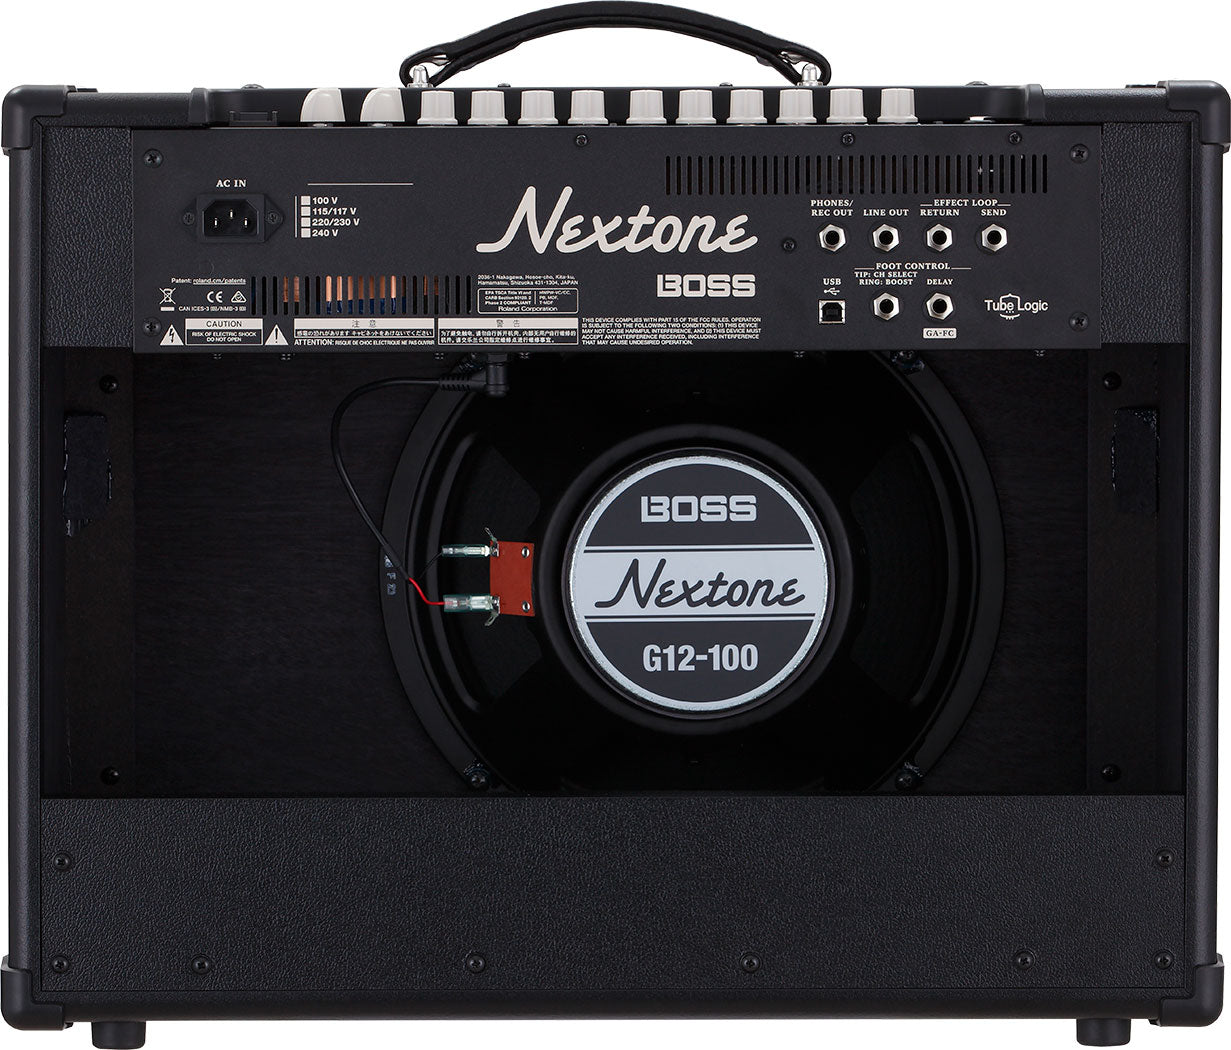 BOSS Nextone Artist Guitar Amplifier 結他擴音器